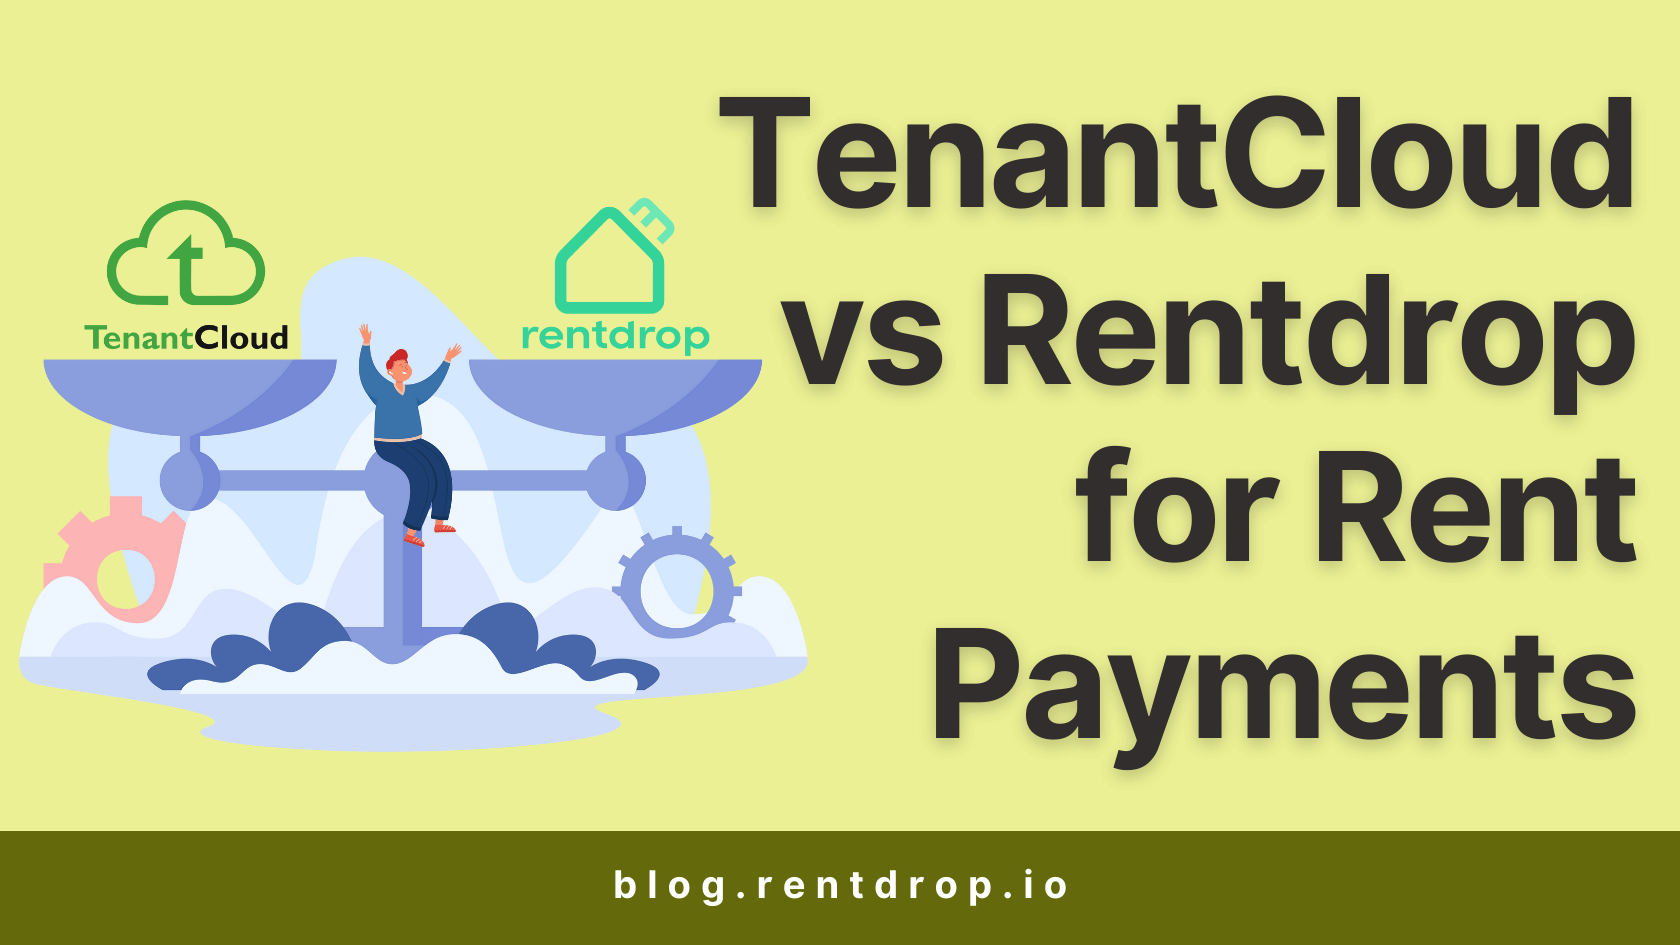 rentdrop vs tenantcloud rent payments hero